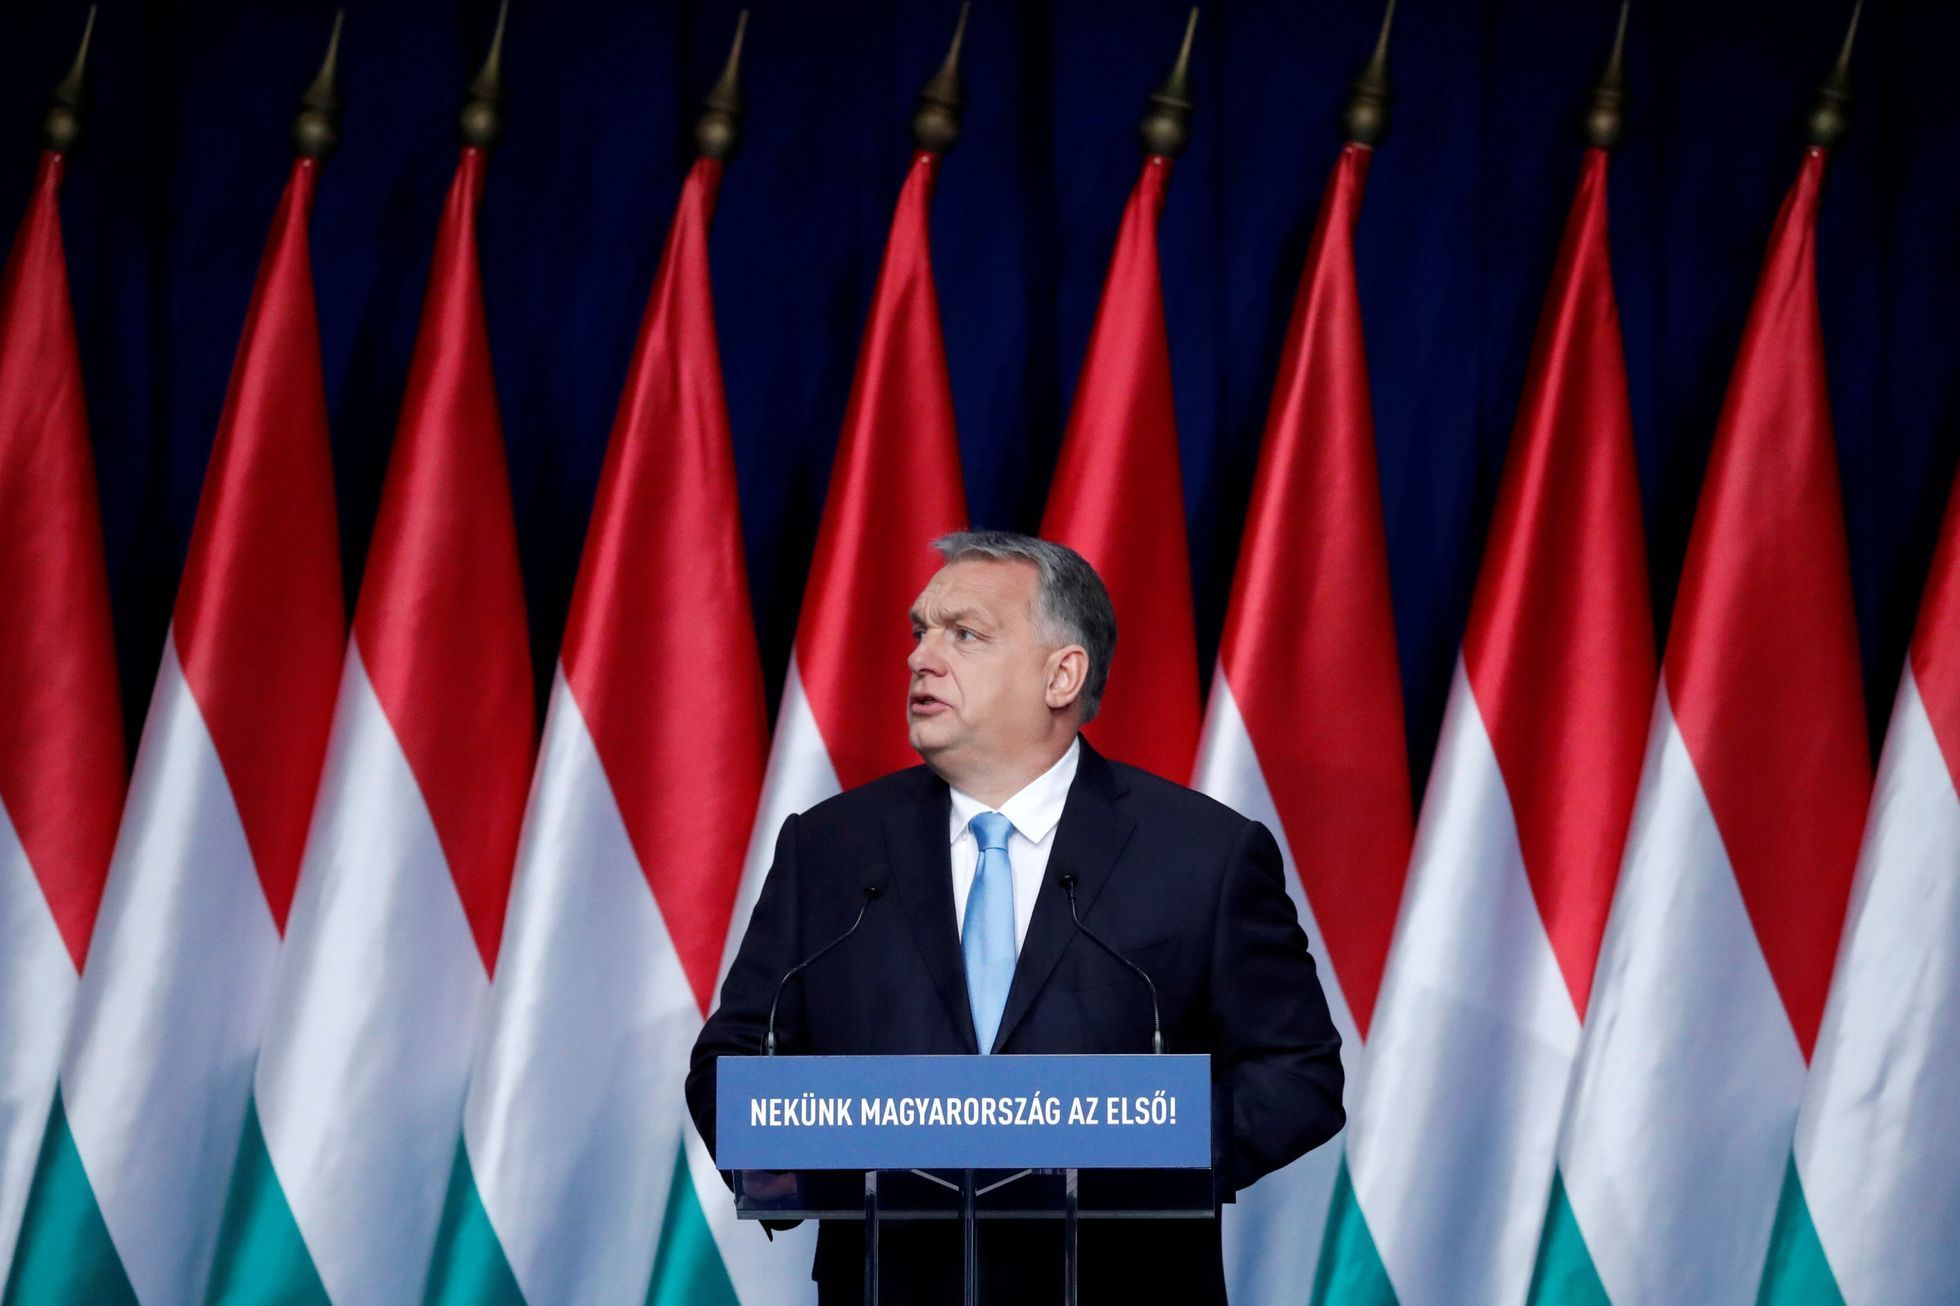 Maďarský premiér Viktor Orbán během výročního projevu o stavu země.